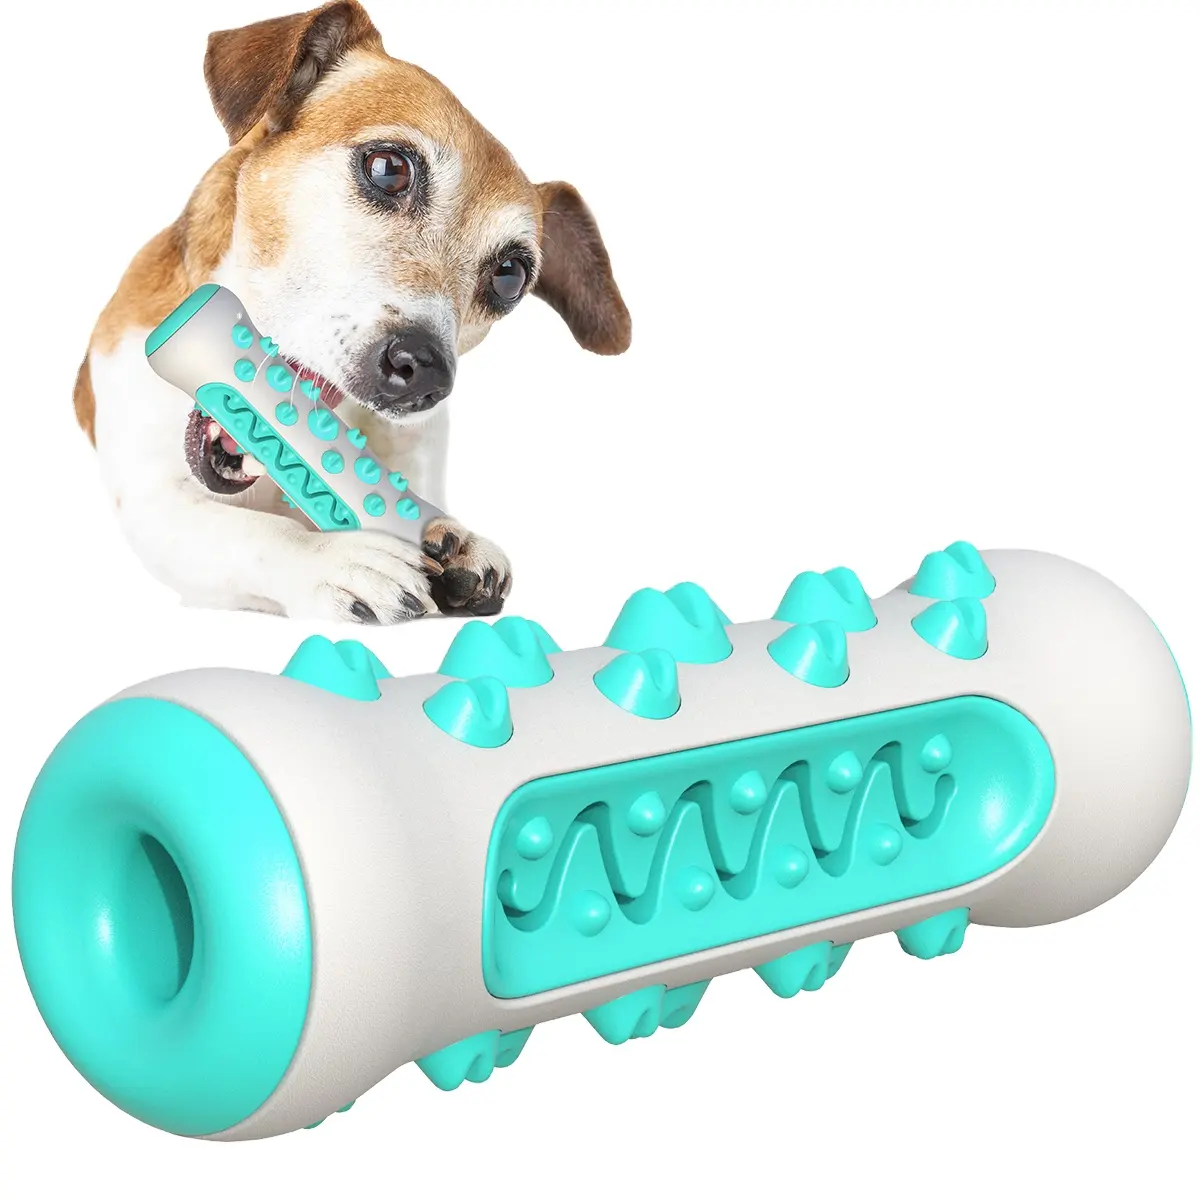 Fabrik Großhandel Großhandel Haustier Lieferant Haustier Spielzeug Hund Kau spielzeug für Haustier Produkte Hot Sell